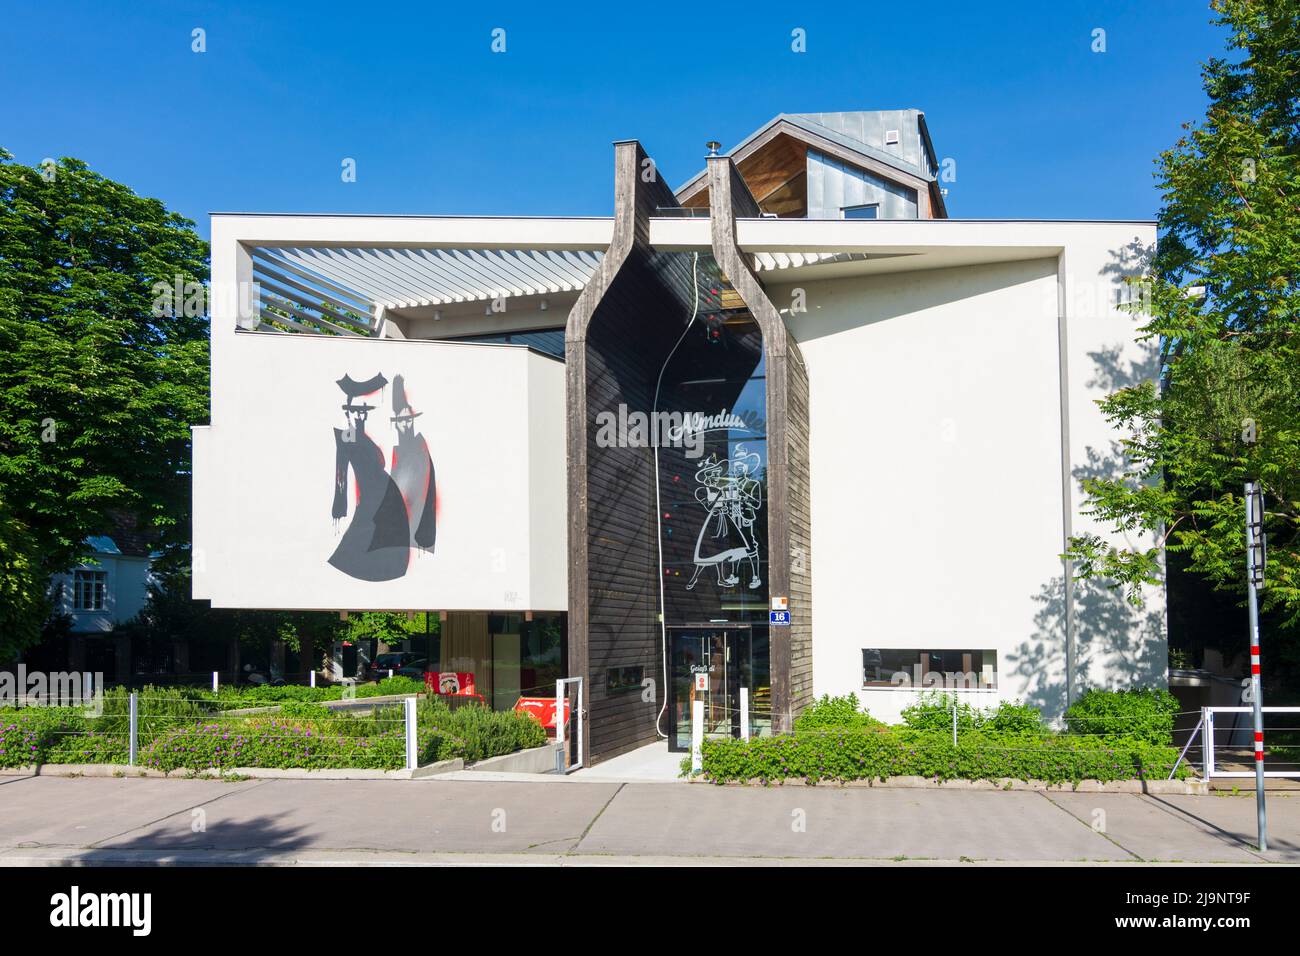 Wien, Vienne: Siège de l'Almdudler Grinzinger Allee 16 en 19. Döbling, Vienne, Autriche Banque D'Images